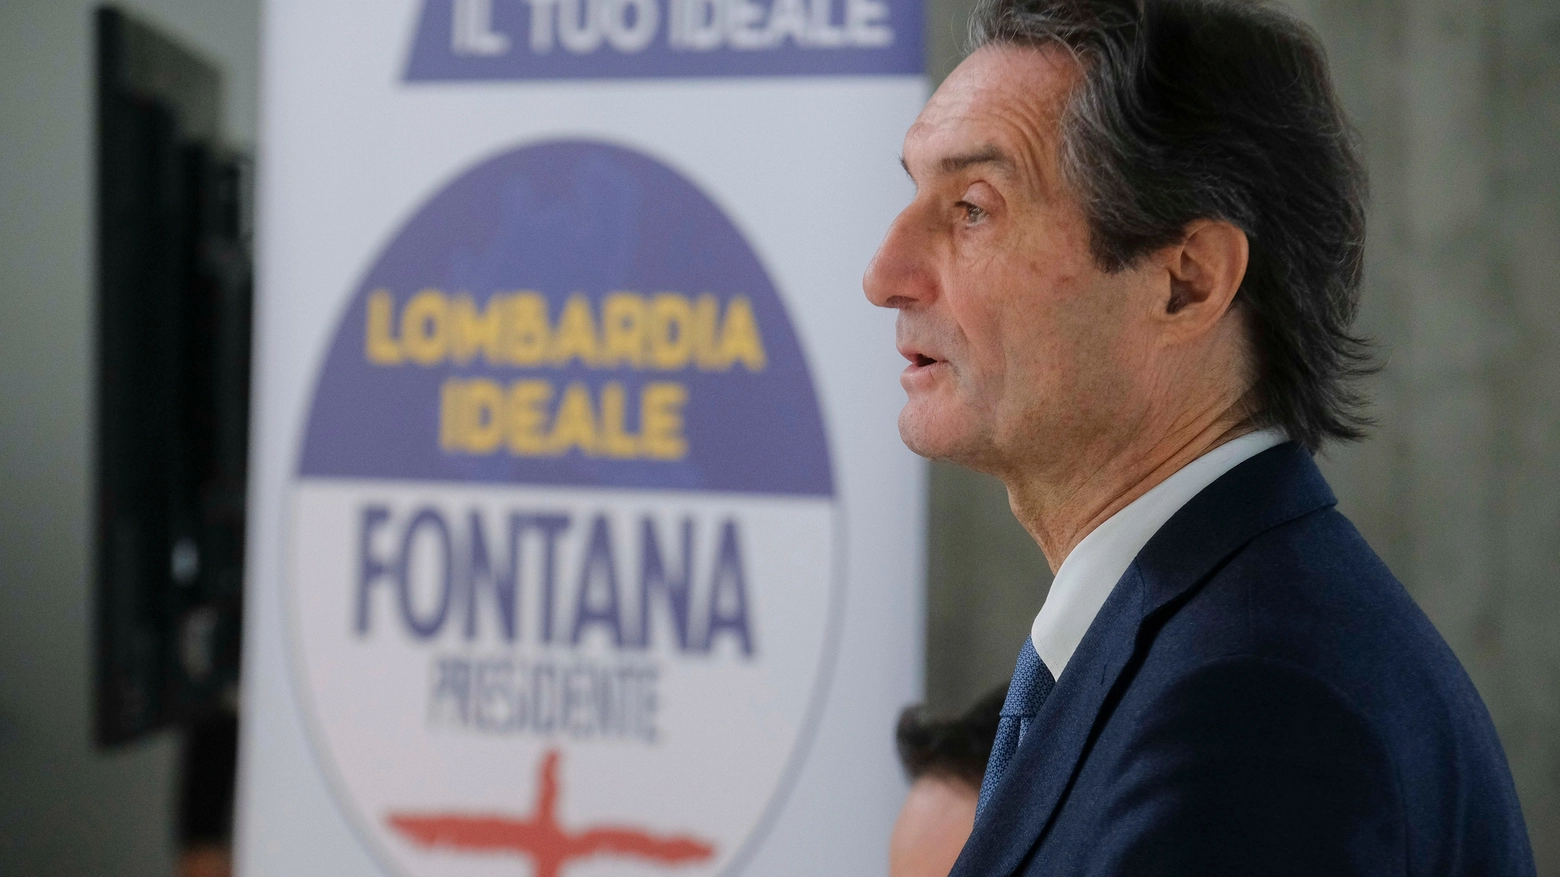 Attilio Fontana con sullo sfondo il logo del movimento Lombardia Ideale